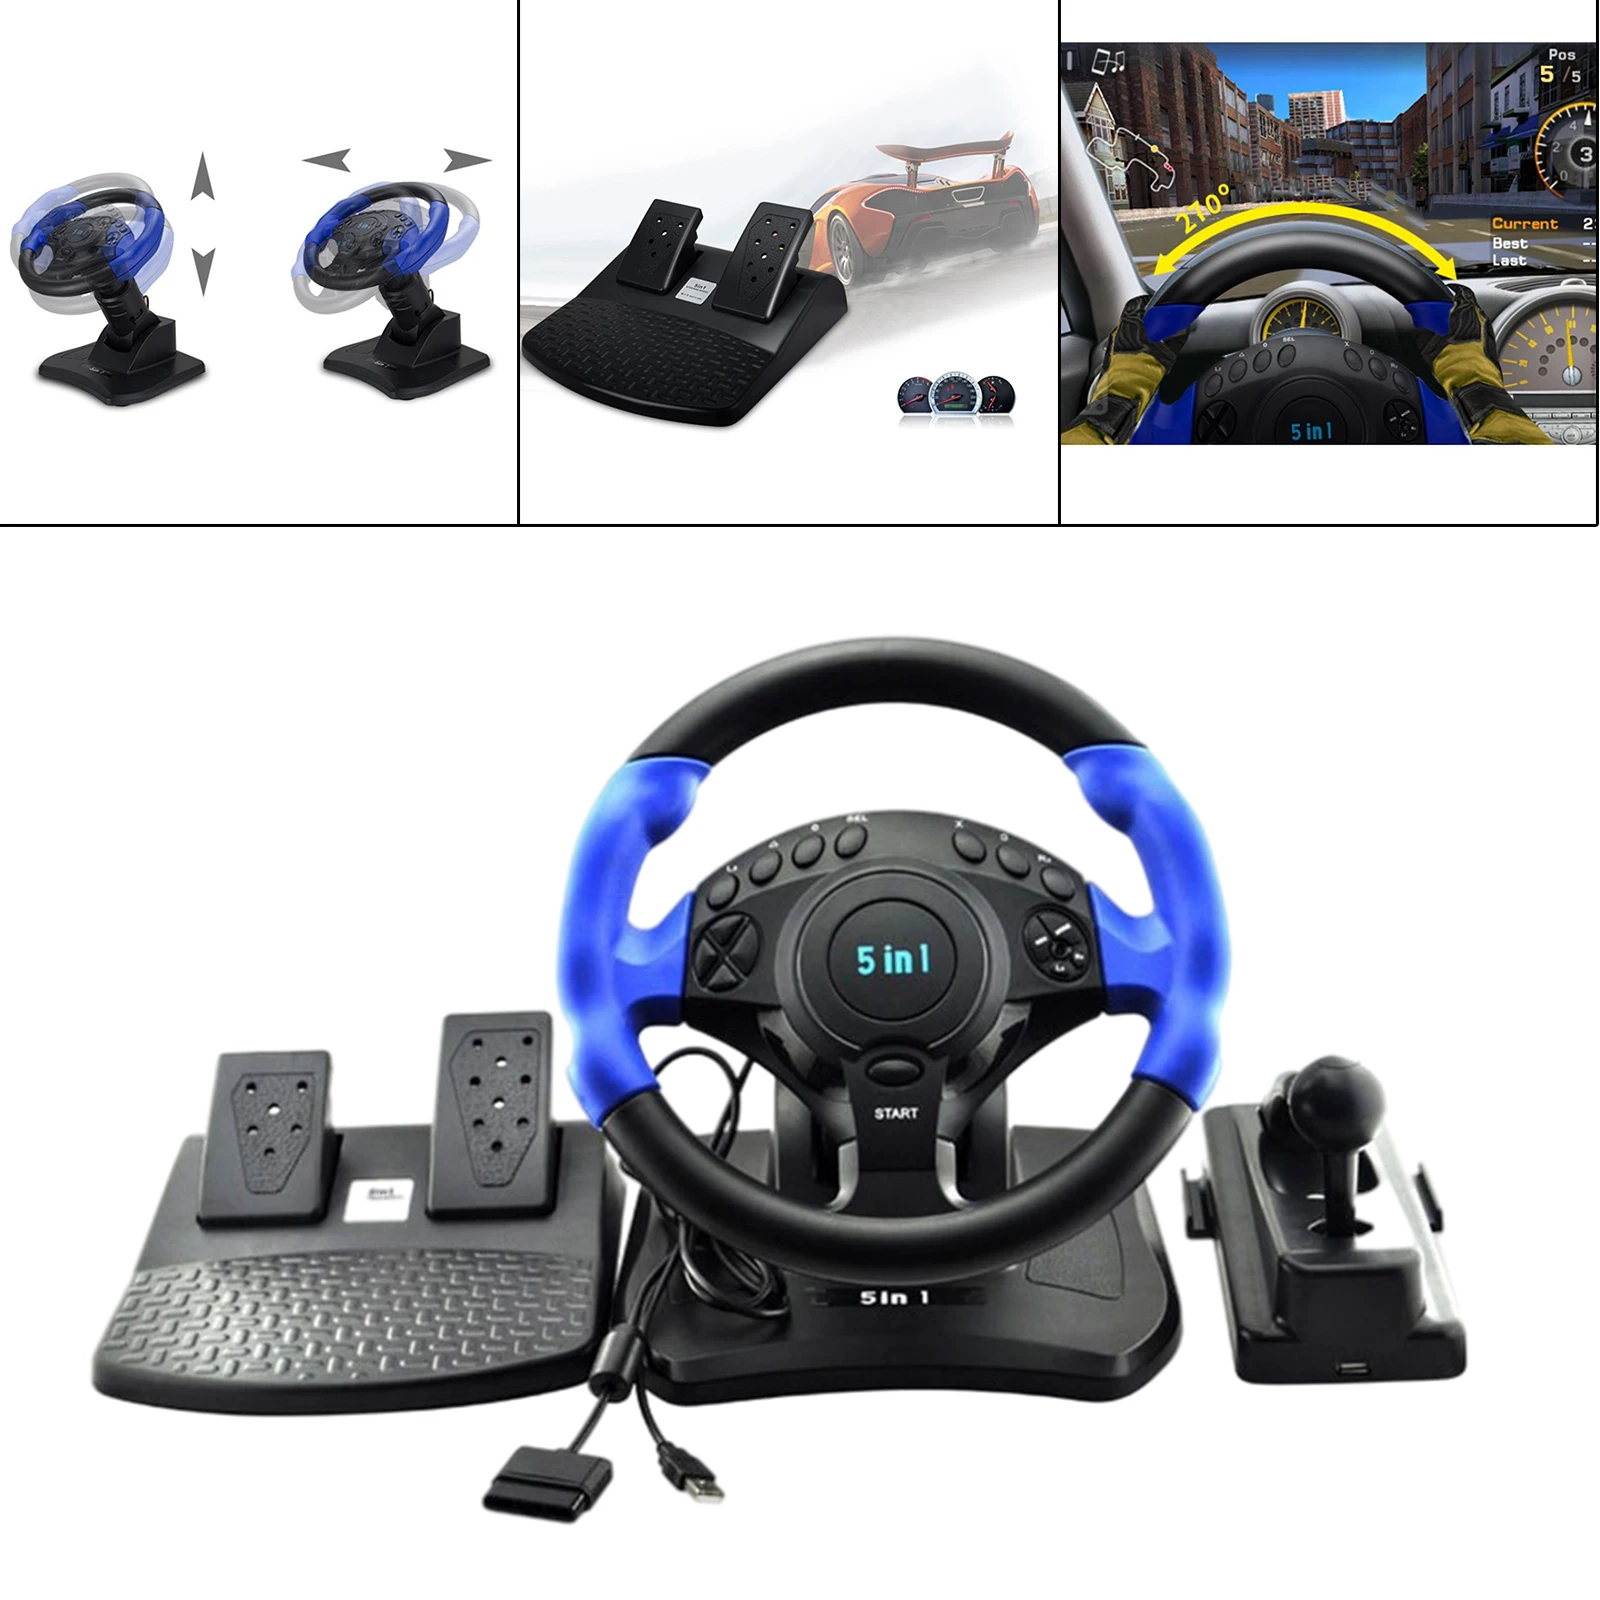 Cheap Steering Wheel For PS4 reddit